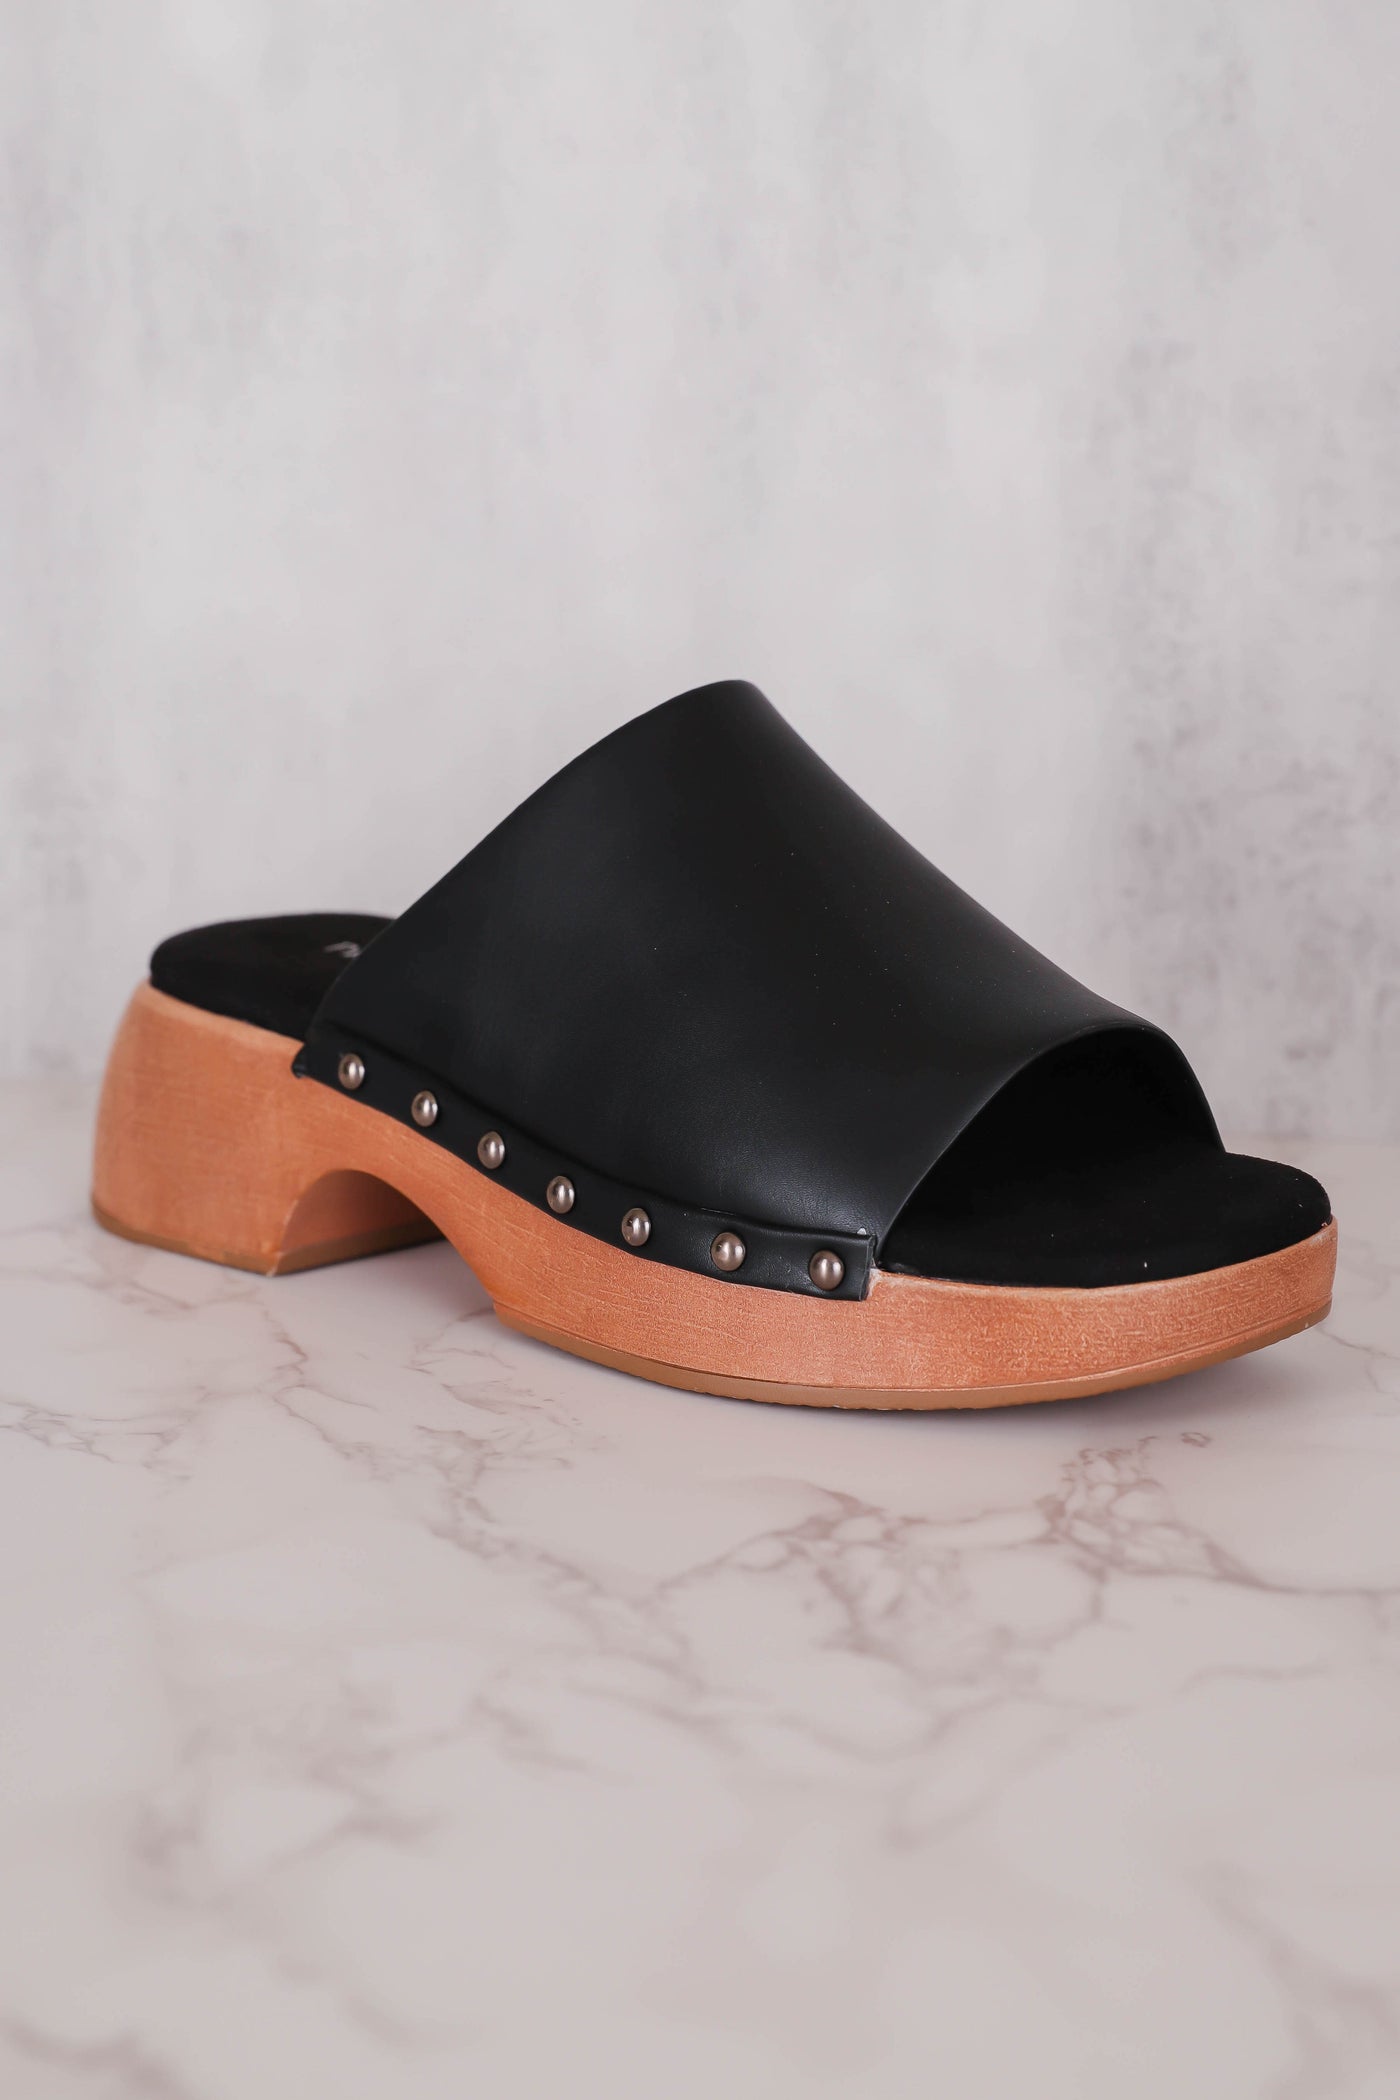 Women's Black Mules- Trendy Mule Sandals- Pierre Dumas Black Clogs